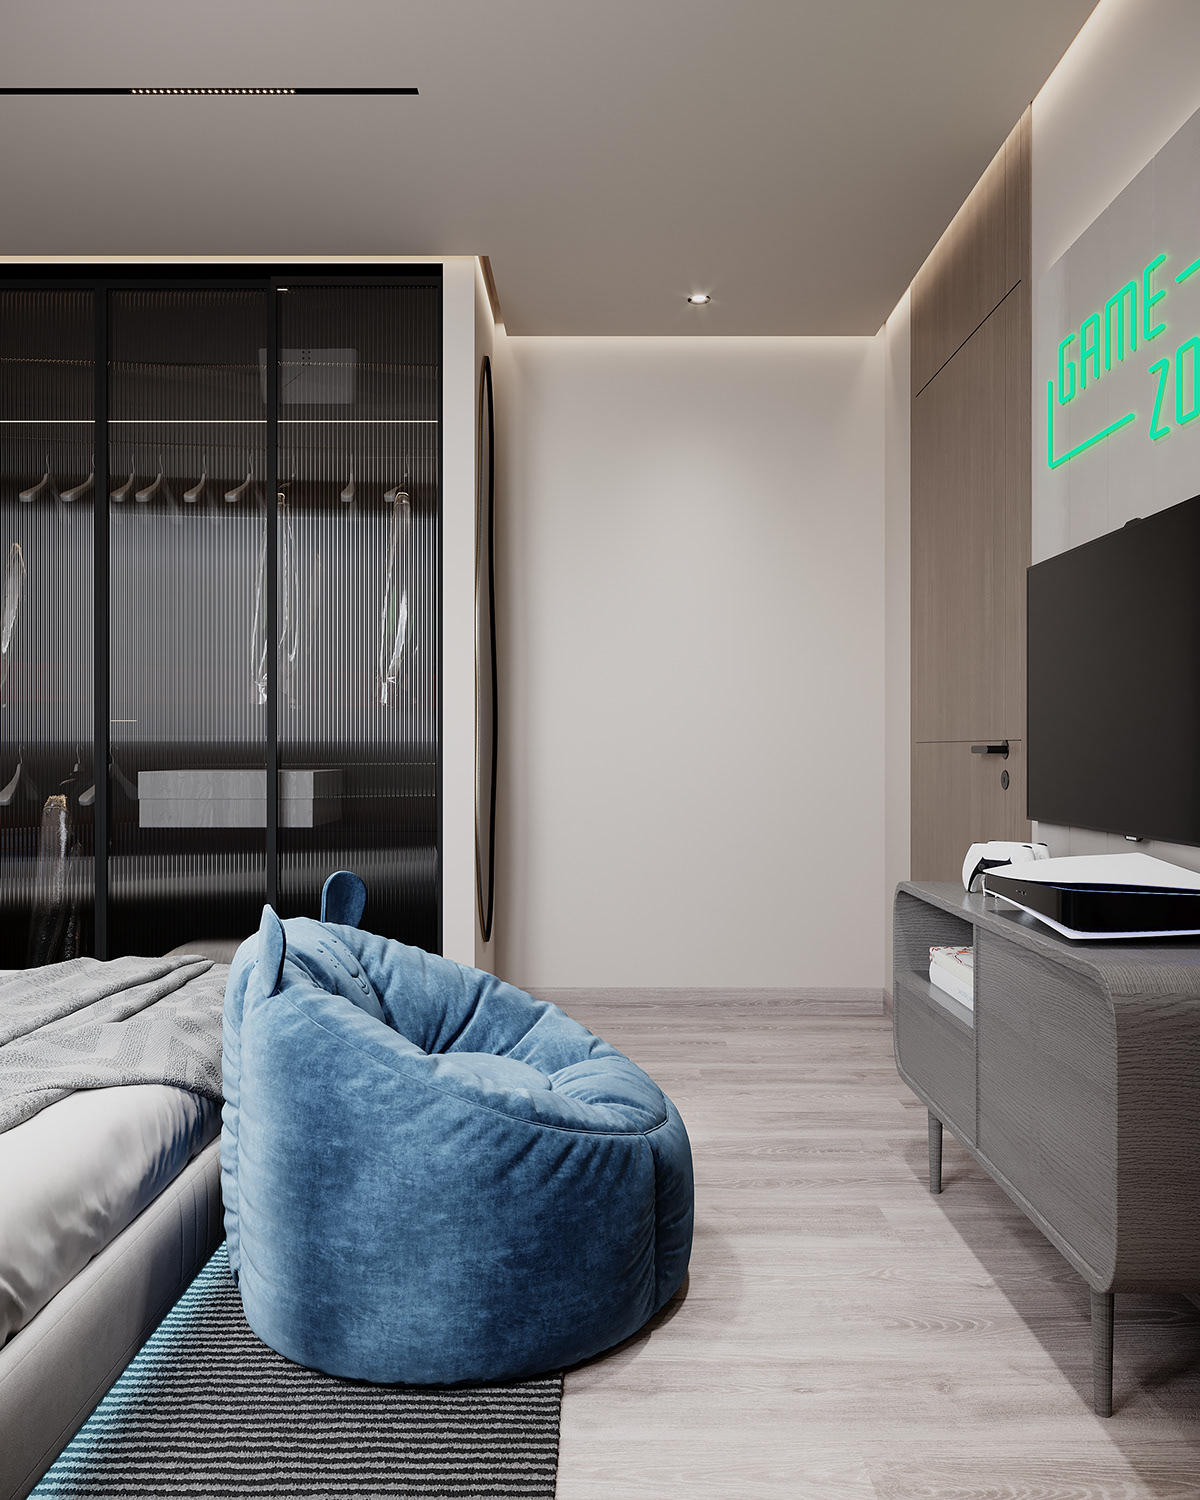 Interior architecture visualization interior design  3ds max corona Boy Bedroom ps5 neon sign blue